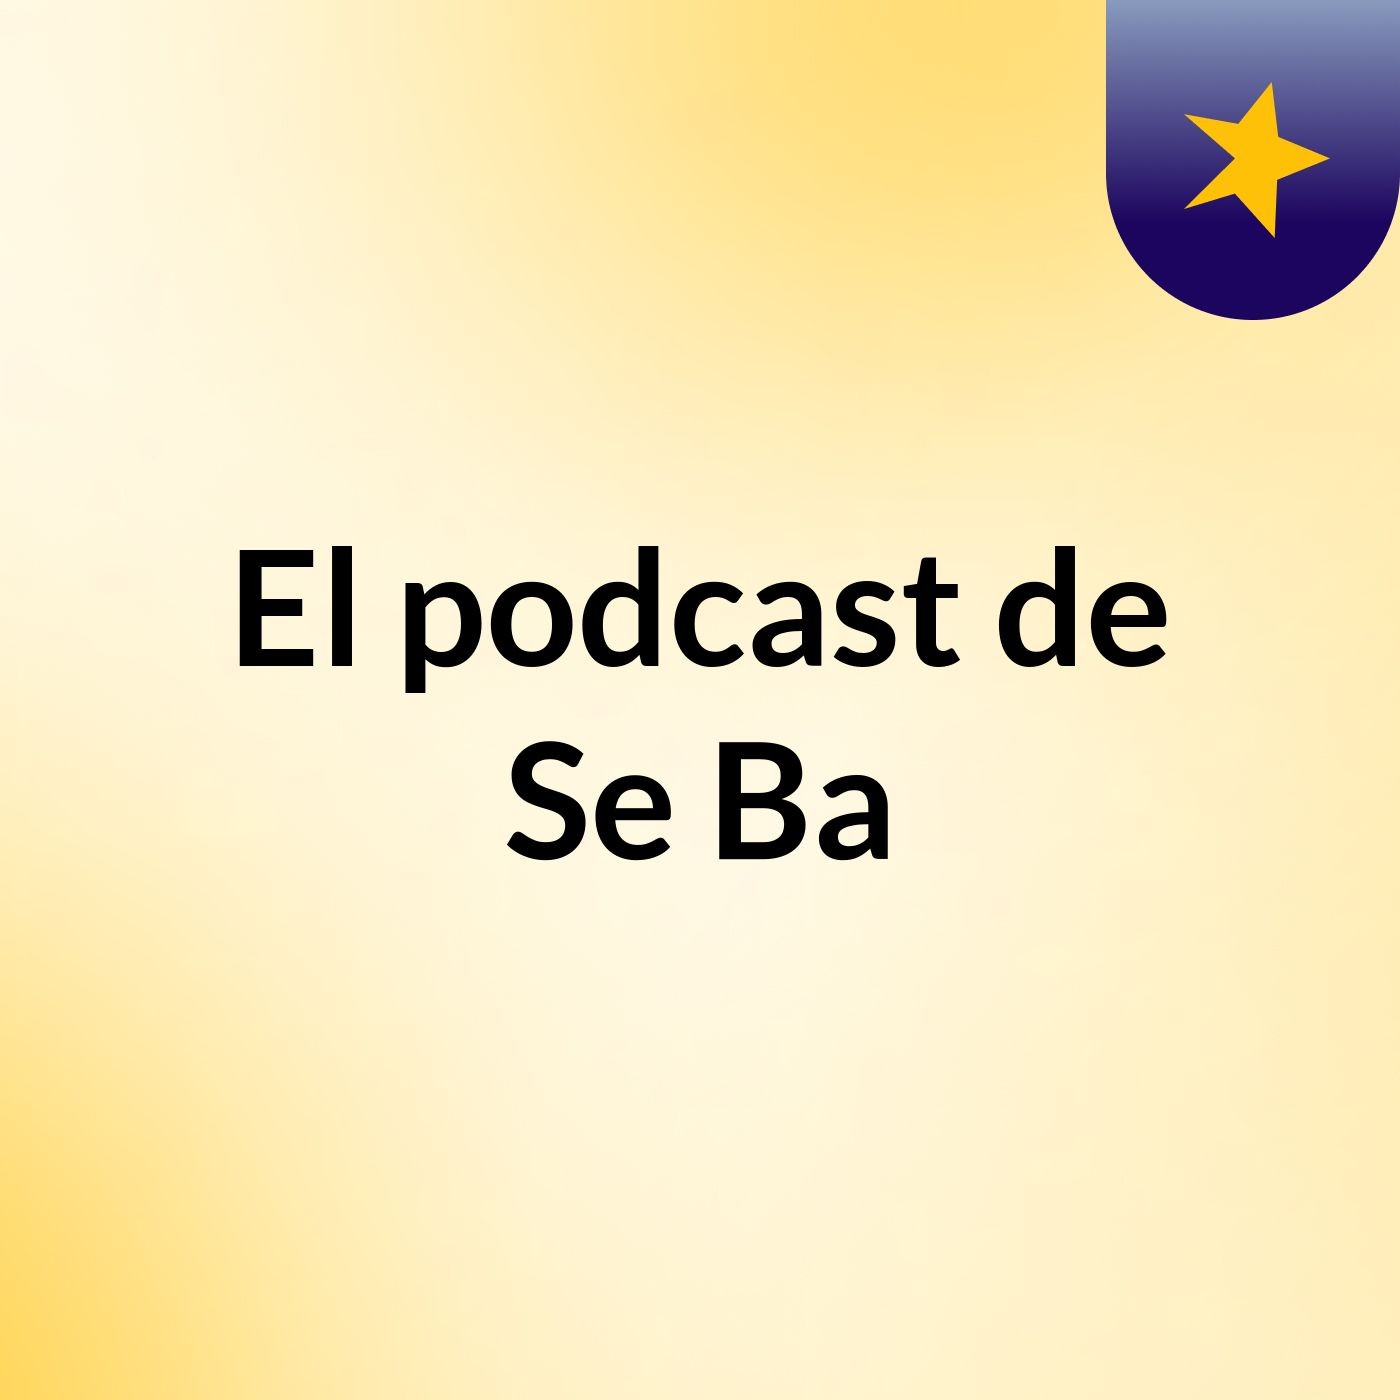 El podcast de Se Ba